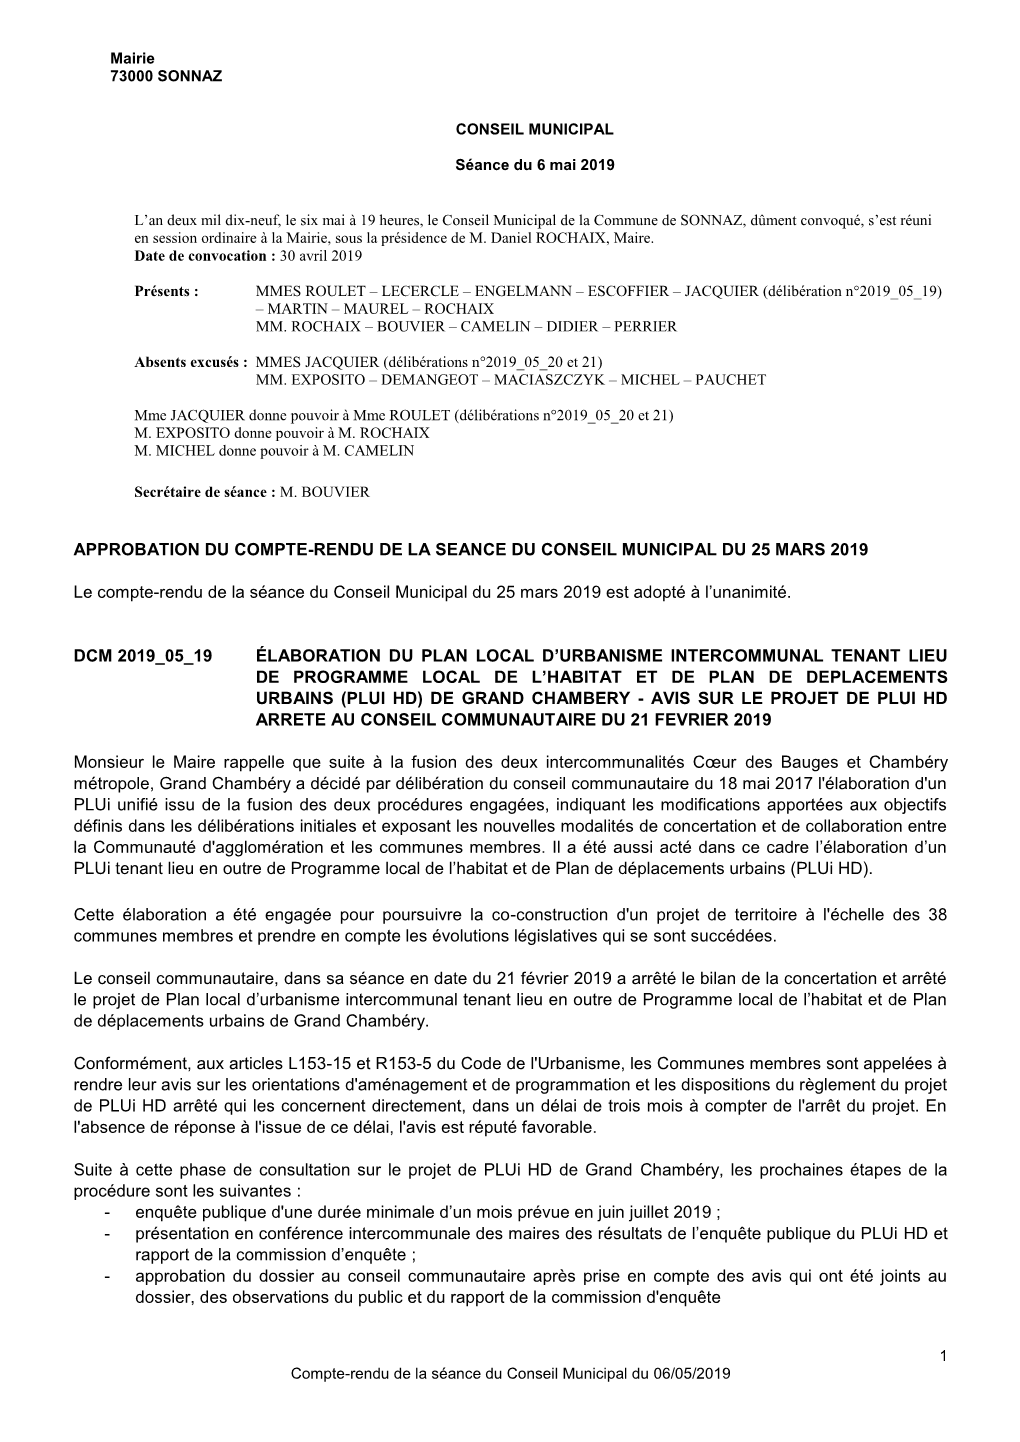 Approbation Du Compte-Rendu De La Seance Du Conseil Municipal Du 25 Mars 2019